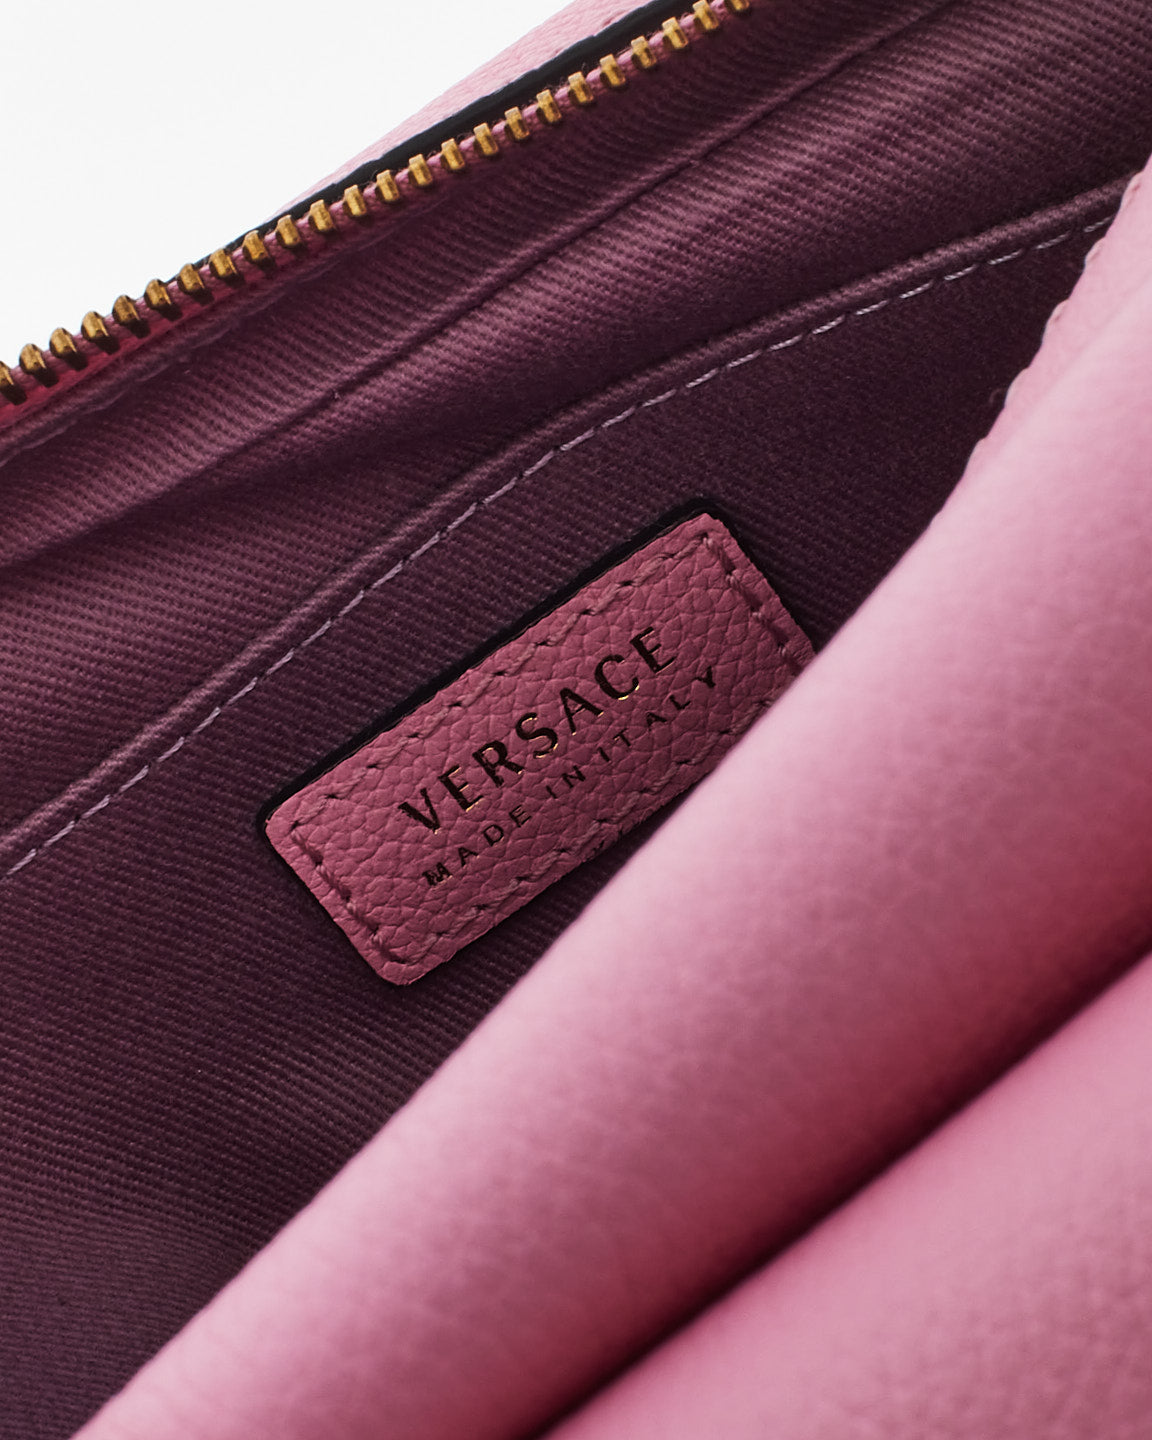 Versace Pink Leather Medusa Camera Bag